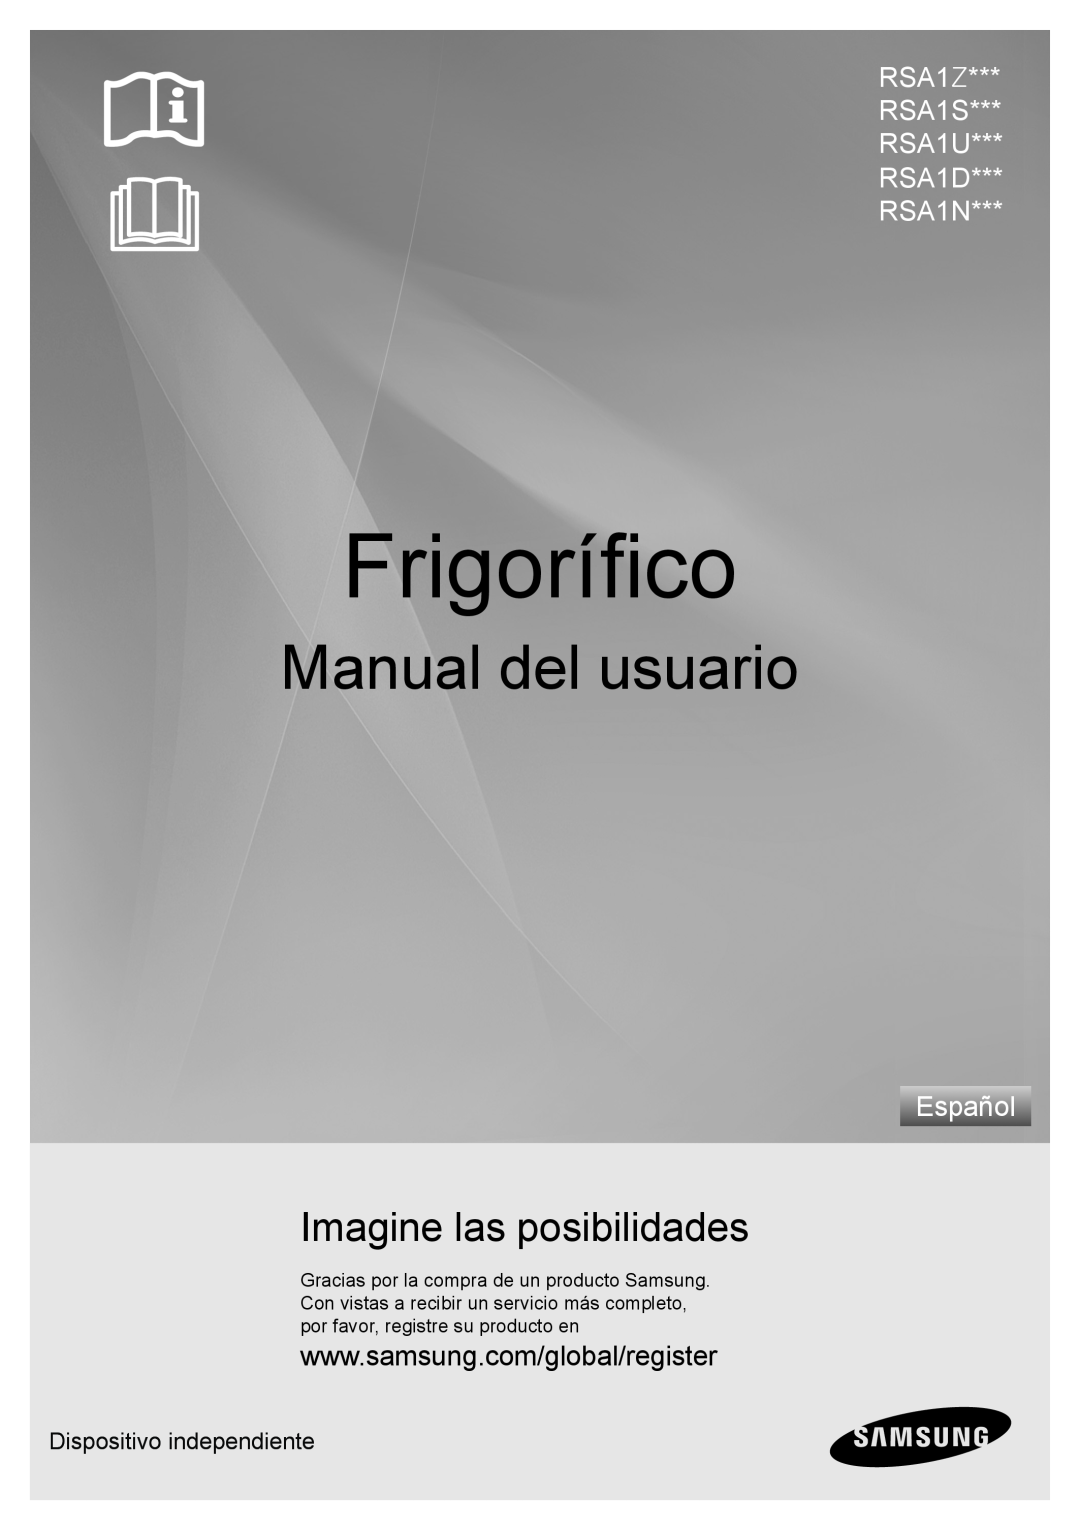 Samsung RSA1NTPE1/XES manual Frigorifero, manuale per l‘utente, immagina le possibilità, 34 344 346 34% 34 